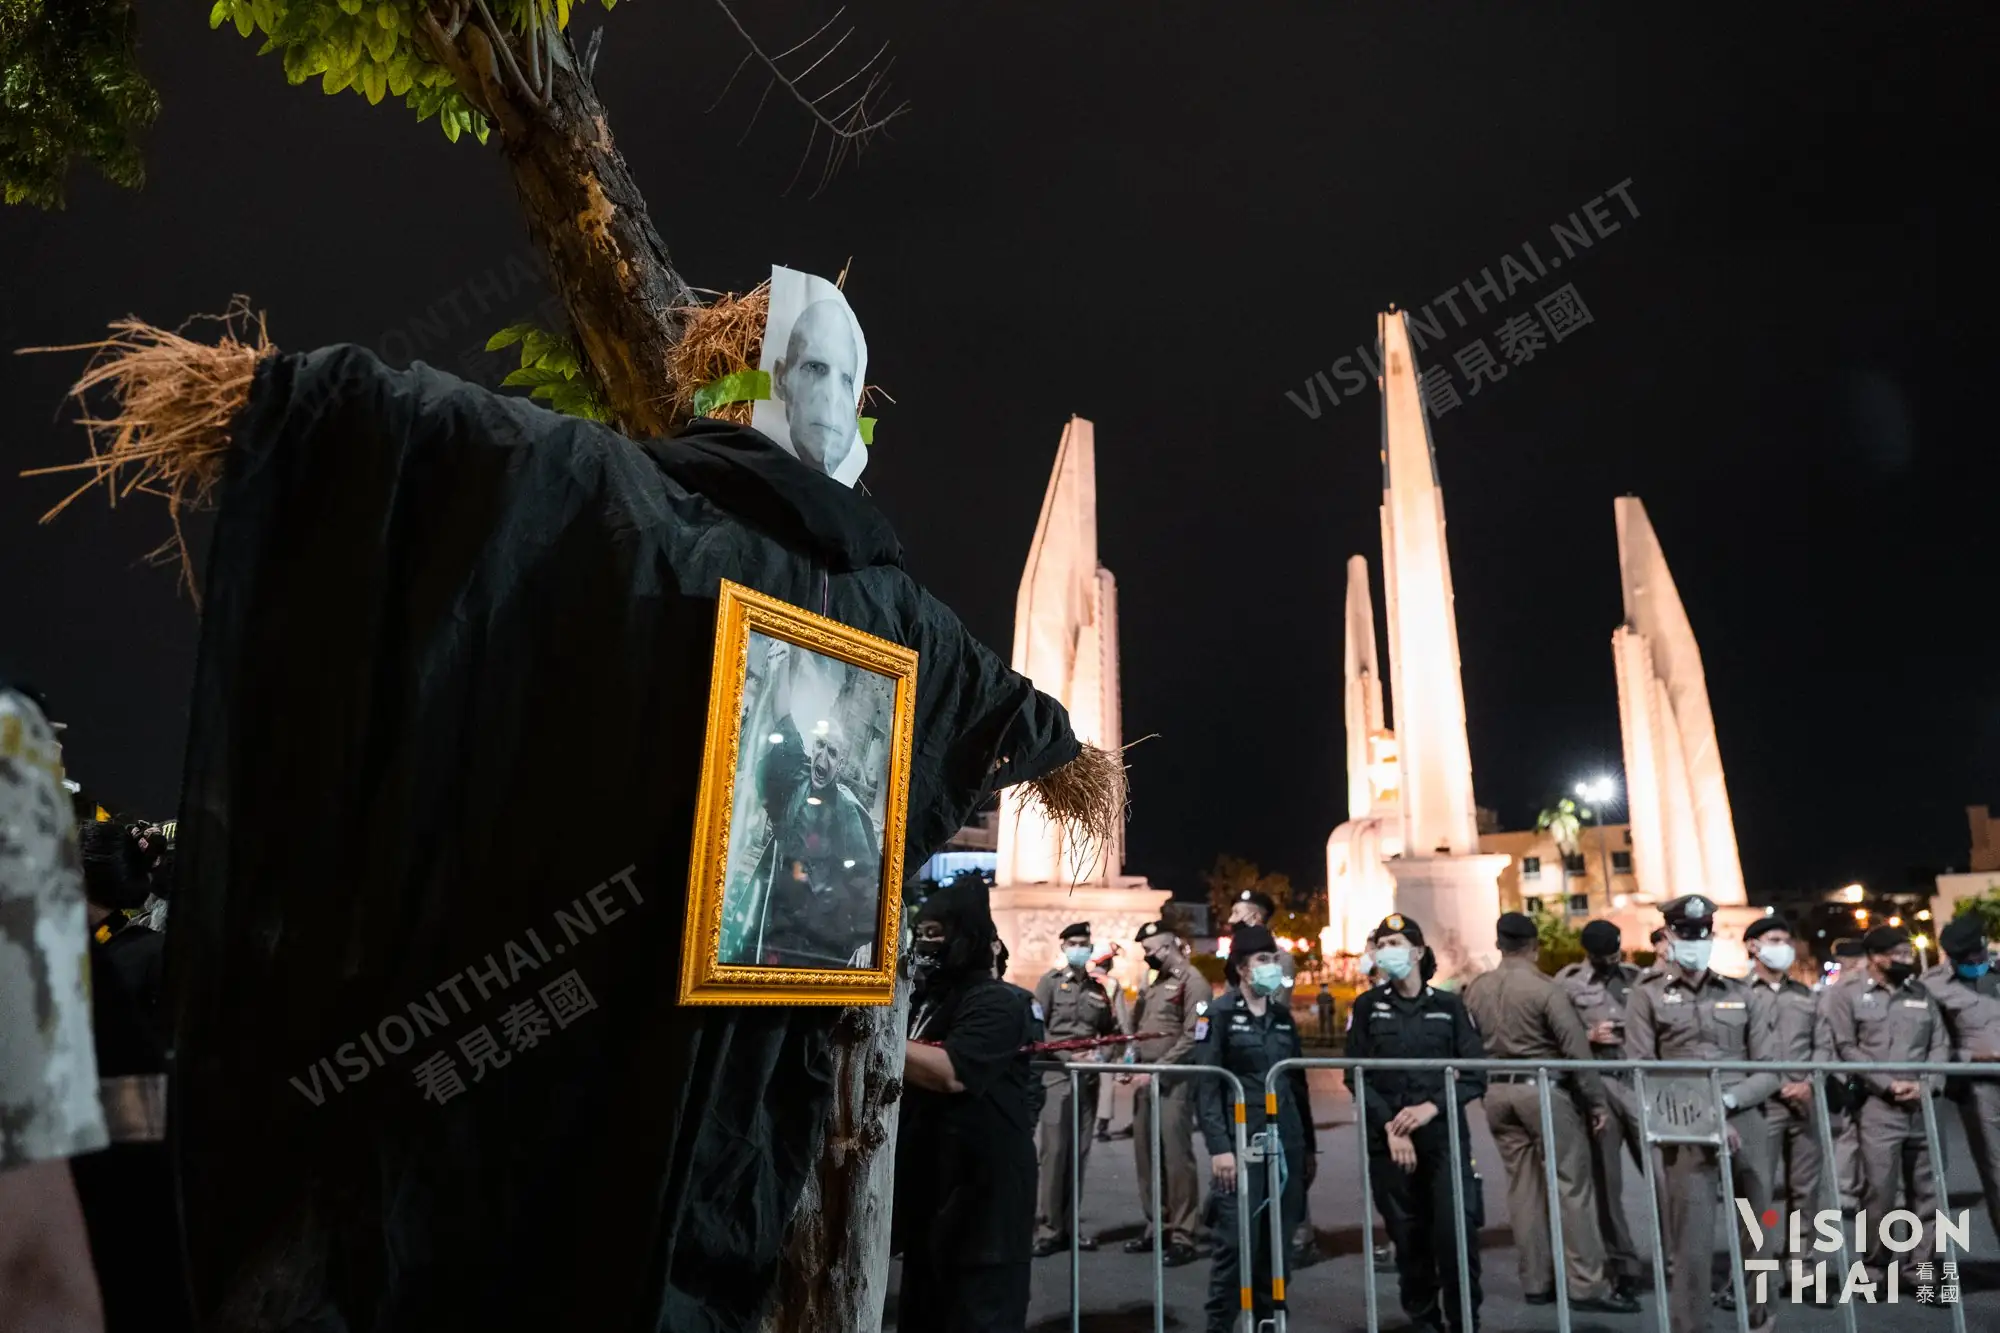 泰国反政府运动以哈利波特为主题發起“那个人(คนที่คุณก็รู้ว่าใคร)”示威活动